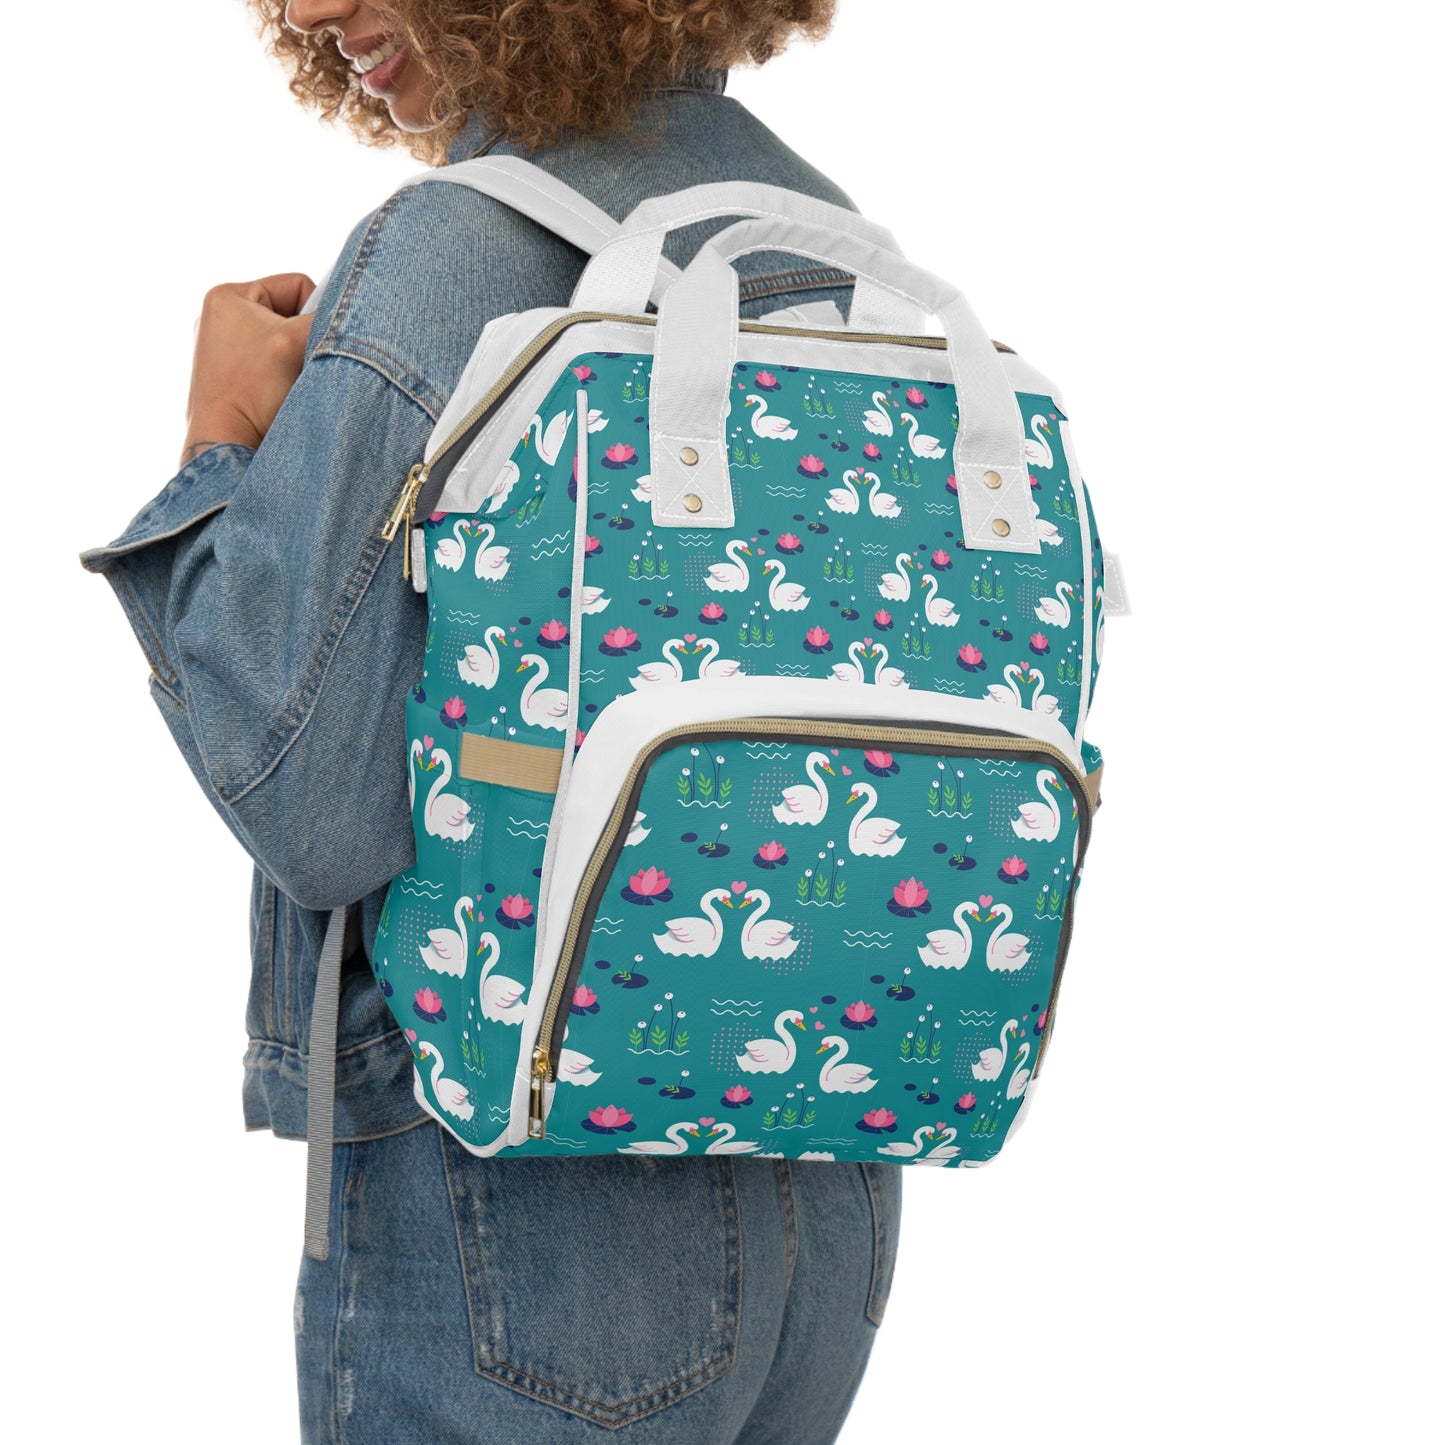 Multi-compartment Diaper Bag, Swan Pattern Diaper Bag, Diaper Bag Backpack